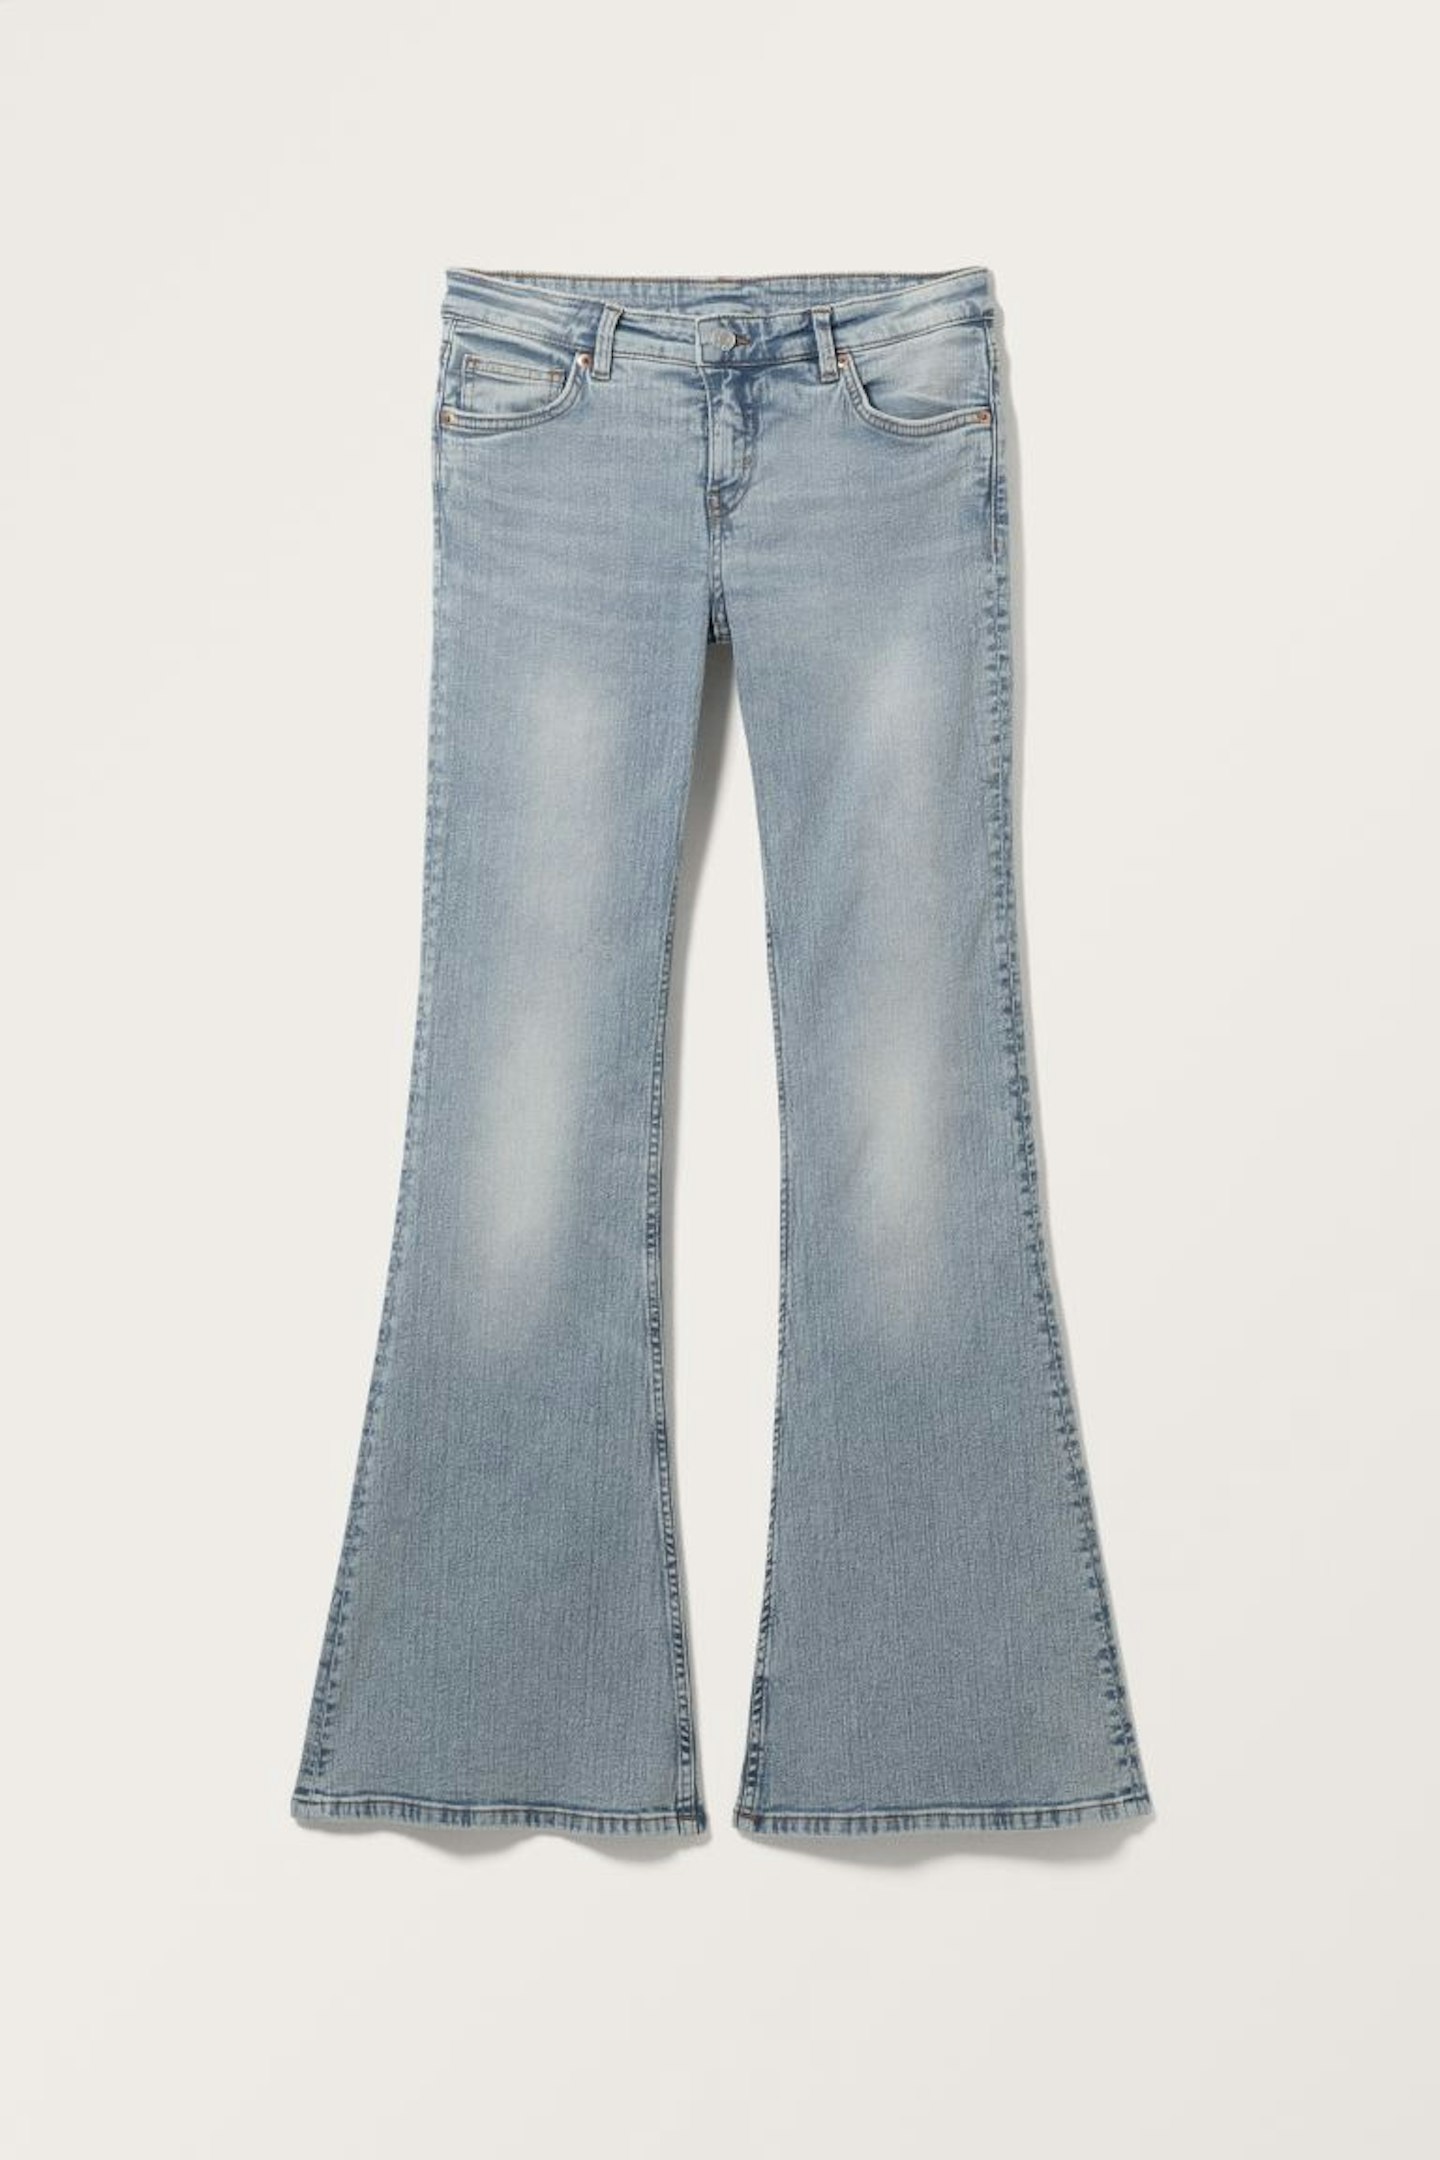 Monki, Katsumi Low Waist Flared Jeans